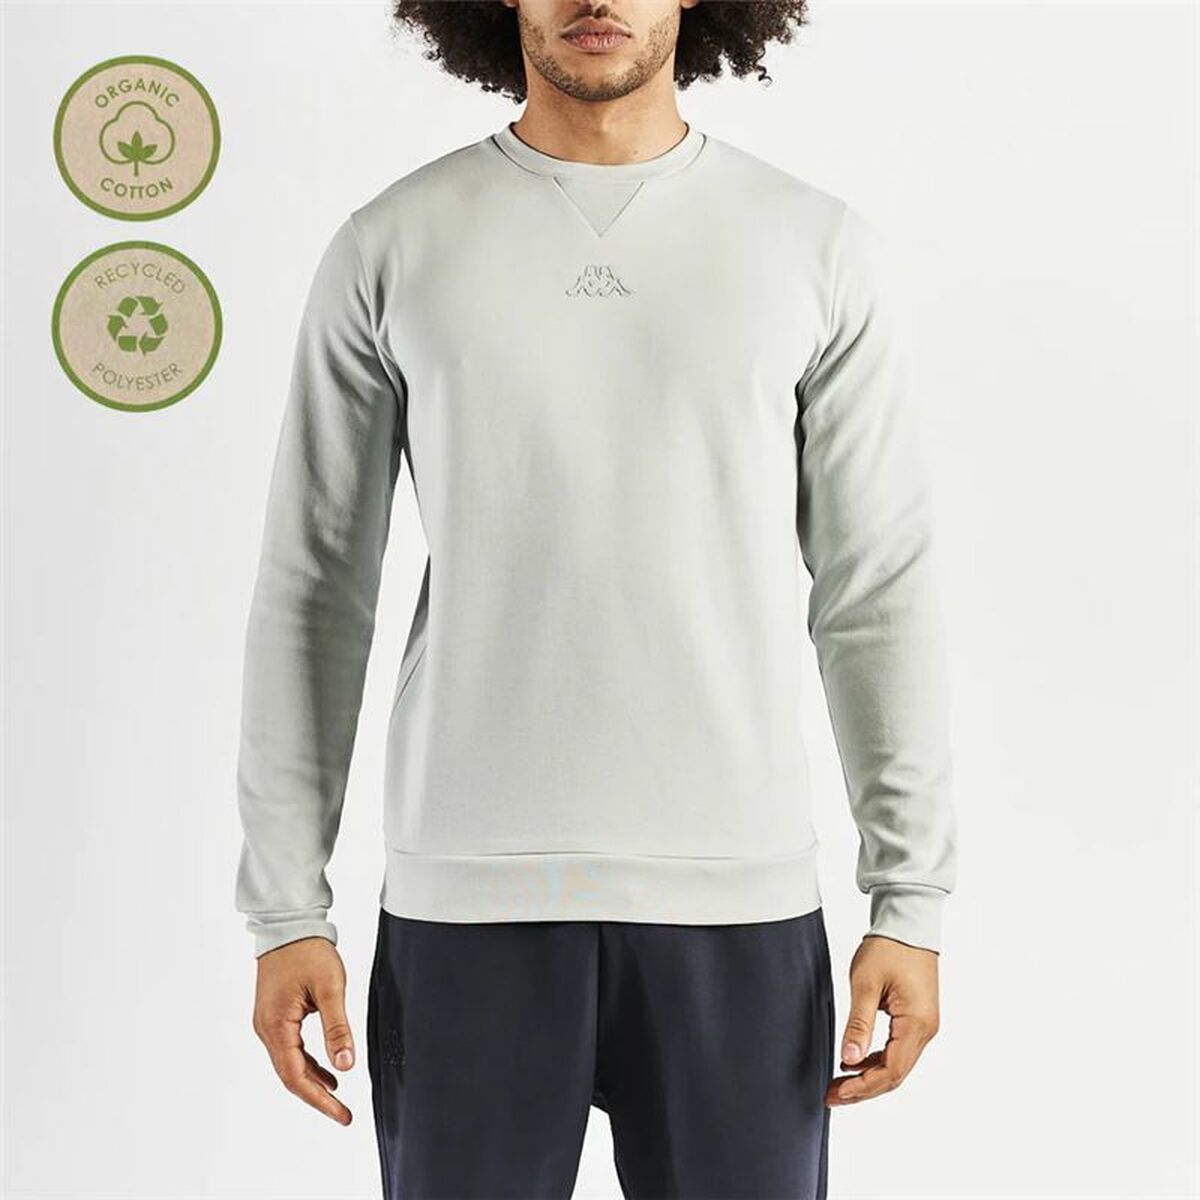 Men’s Sweatshirt without Hood Kappa Grey